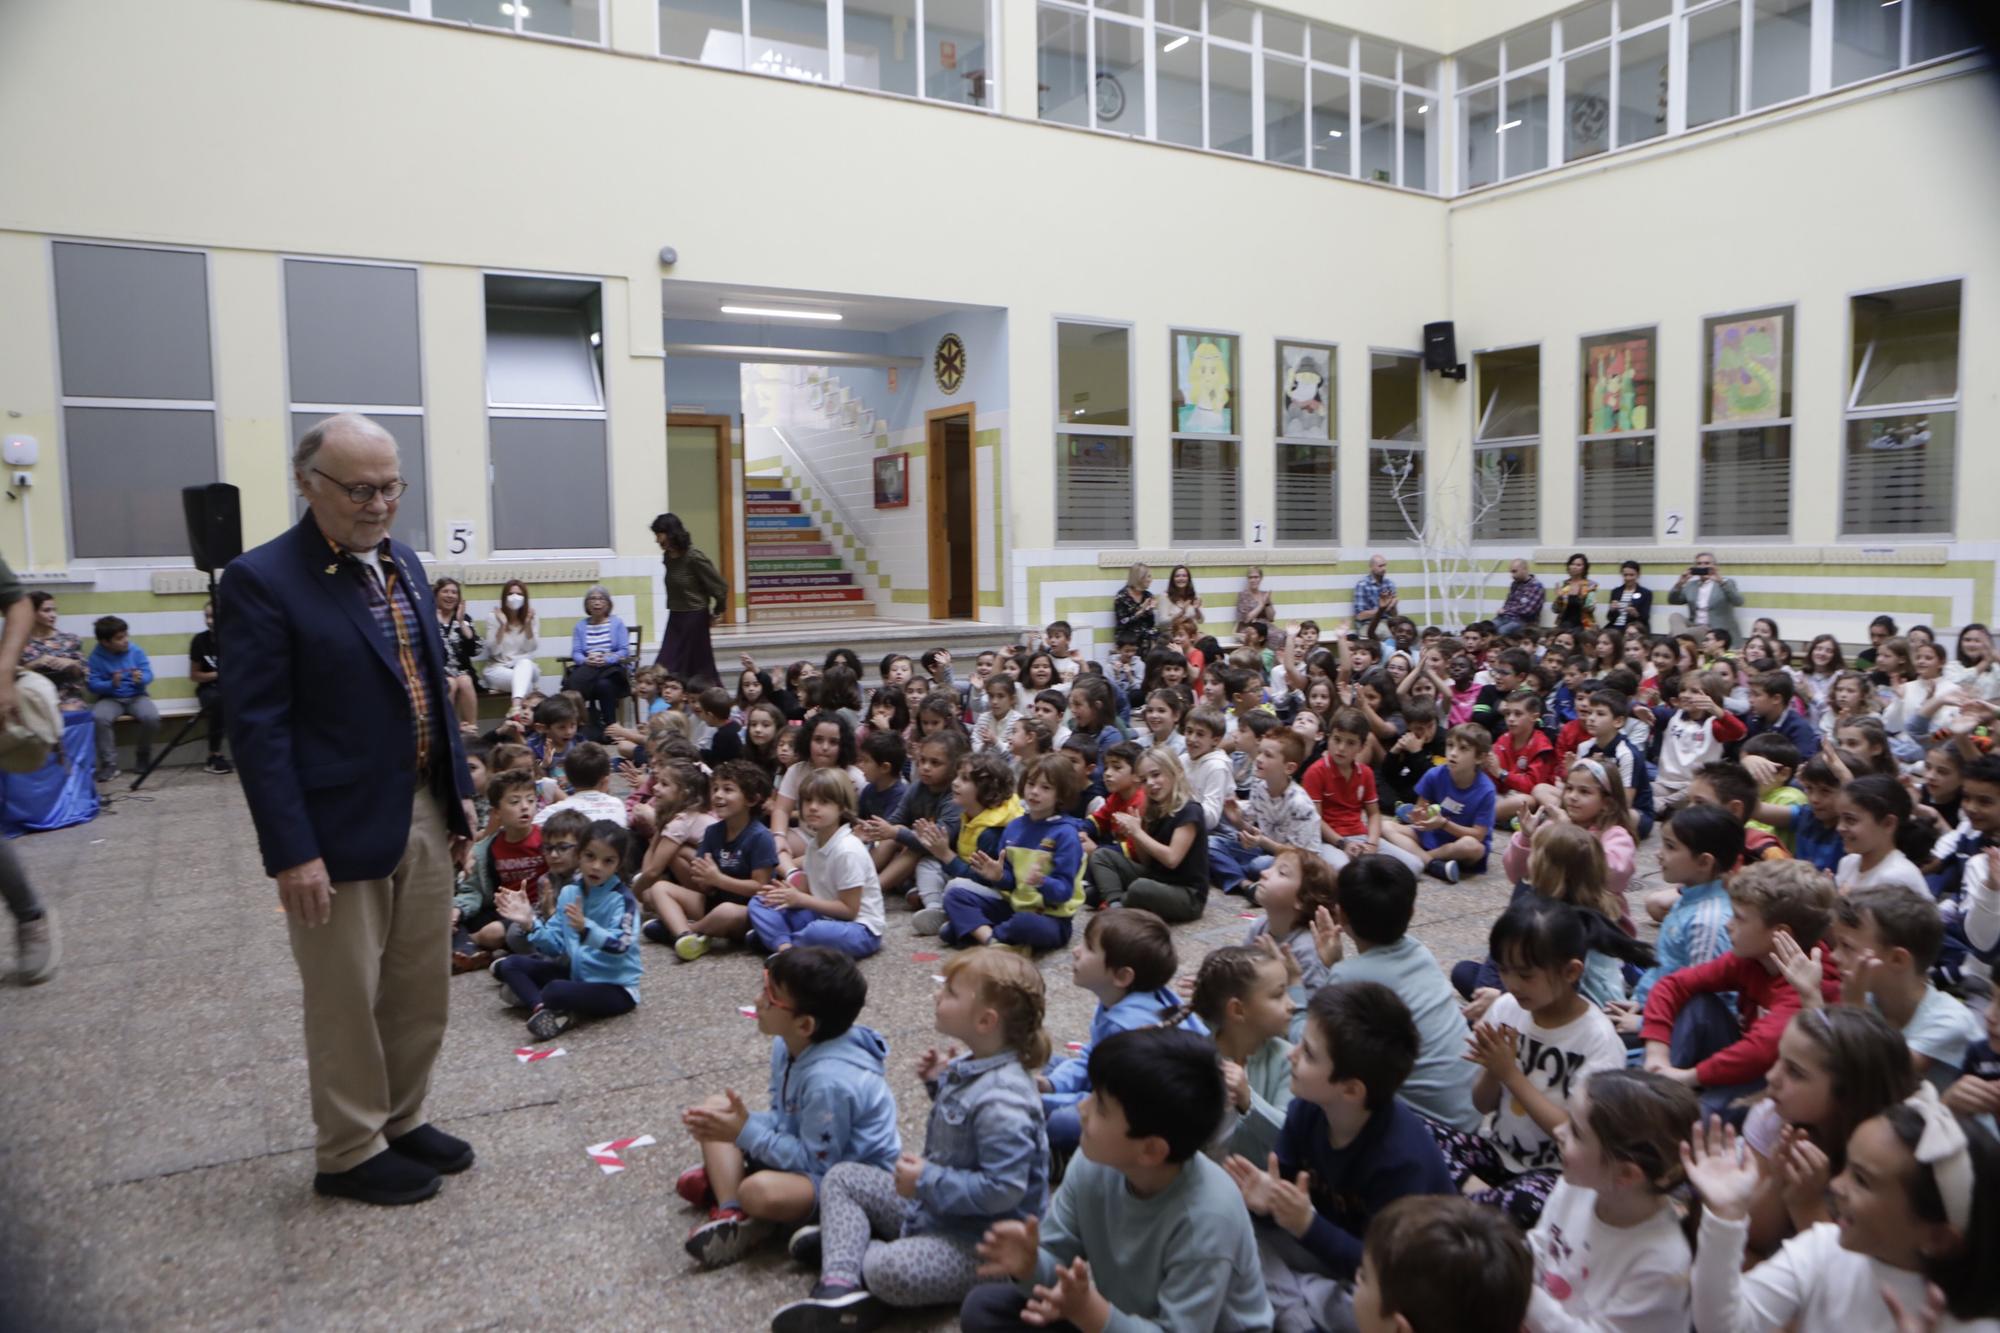 EN IMÁGENES: Philip Felgner, uno de los padres de la vacuna contra el covid, vuelve a Asturias y visita el colegio Clarin en Gijón